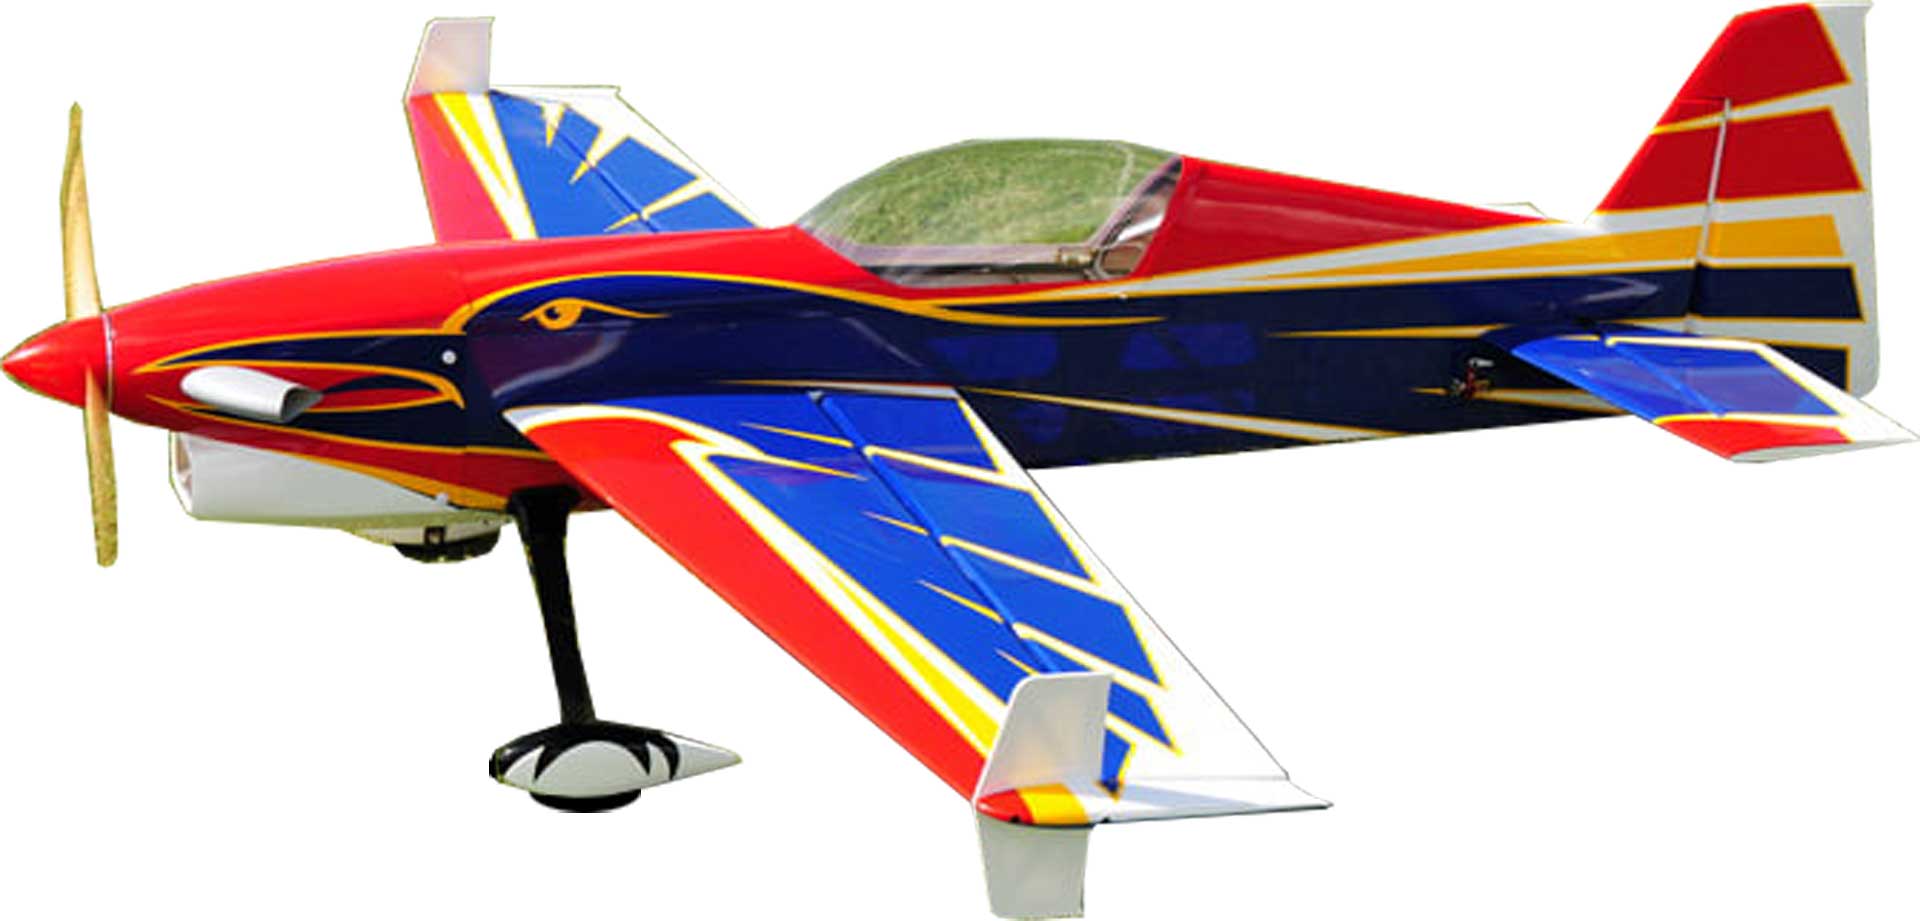 Extremeflight-RC Turbo Raven 69" V2 Plus Rot/Blau ARF